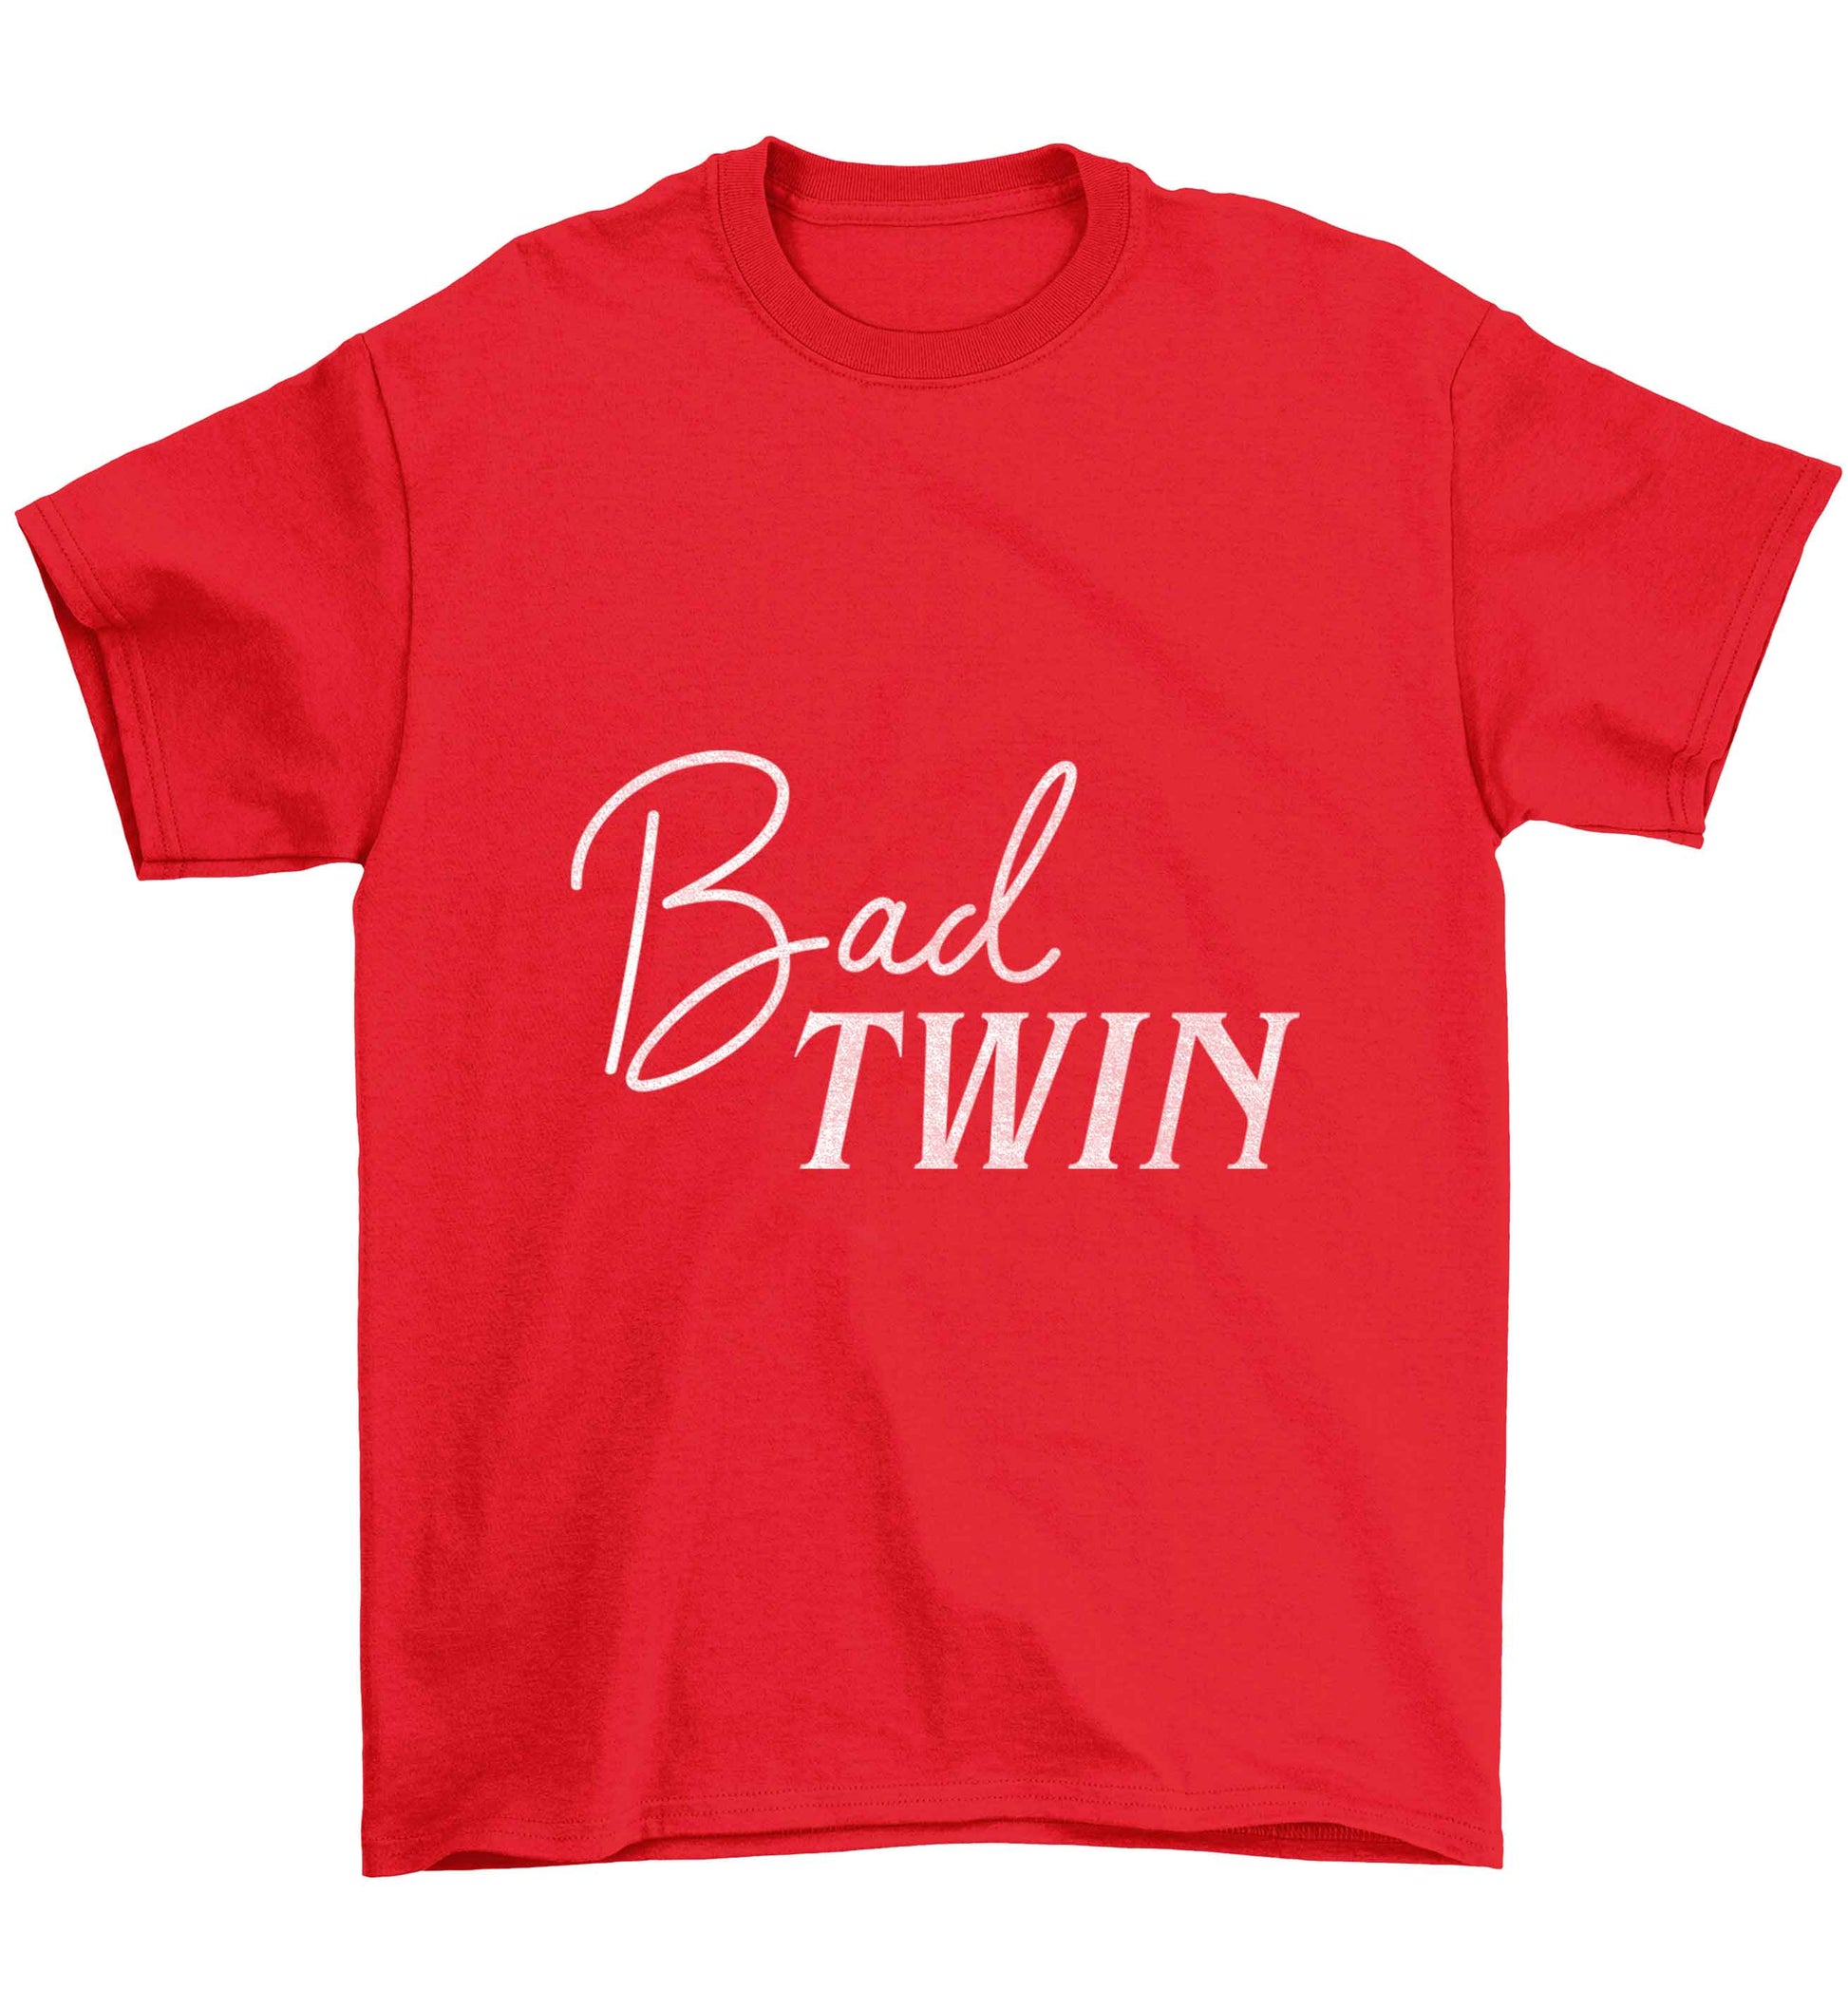 Bad twin Children's red Tshirt 12-13 Years